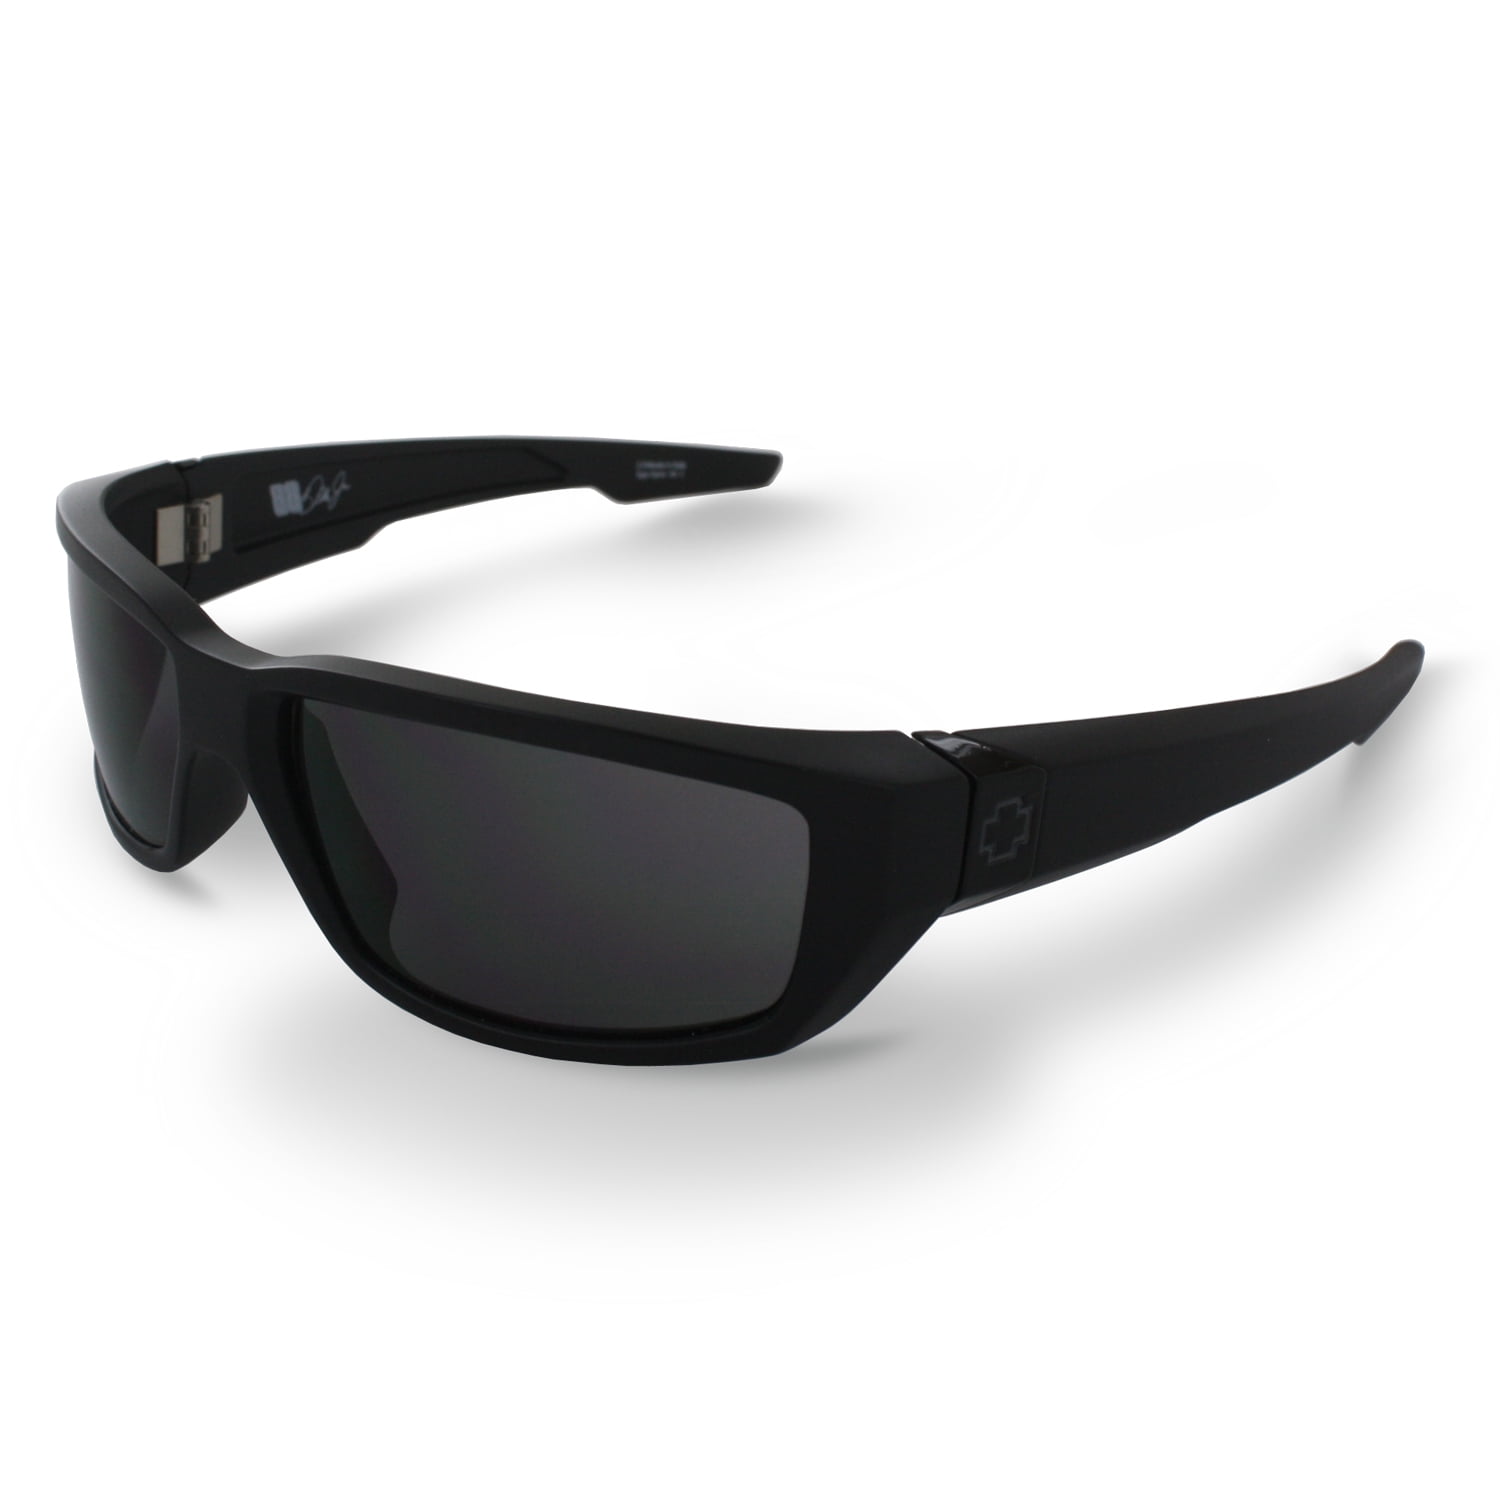 Dirty Mo Matte Black Sunglasses, Grey Lens - Walmart.com